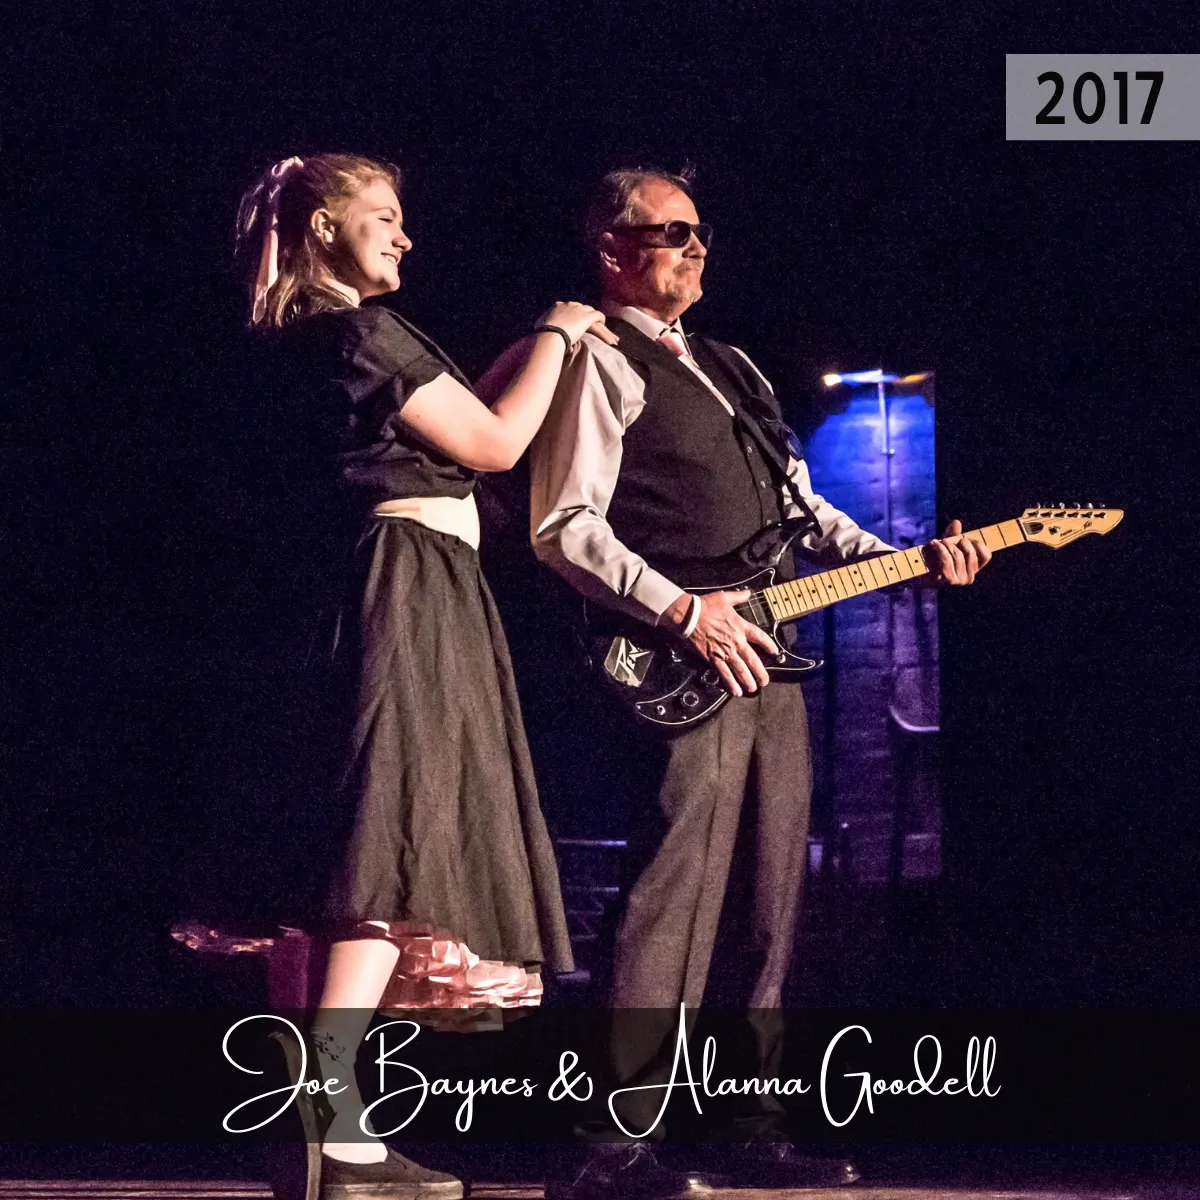 2017 Hall of Fame - Joe Baynes and Alanna Goodell